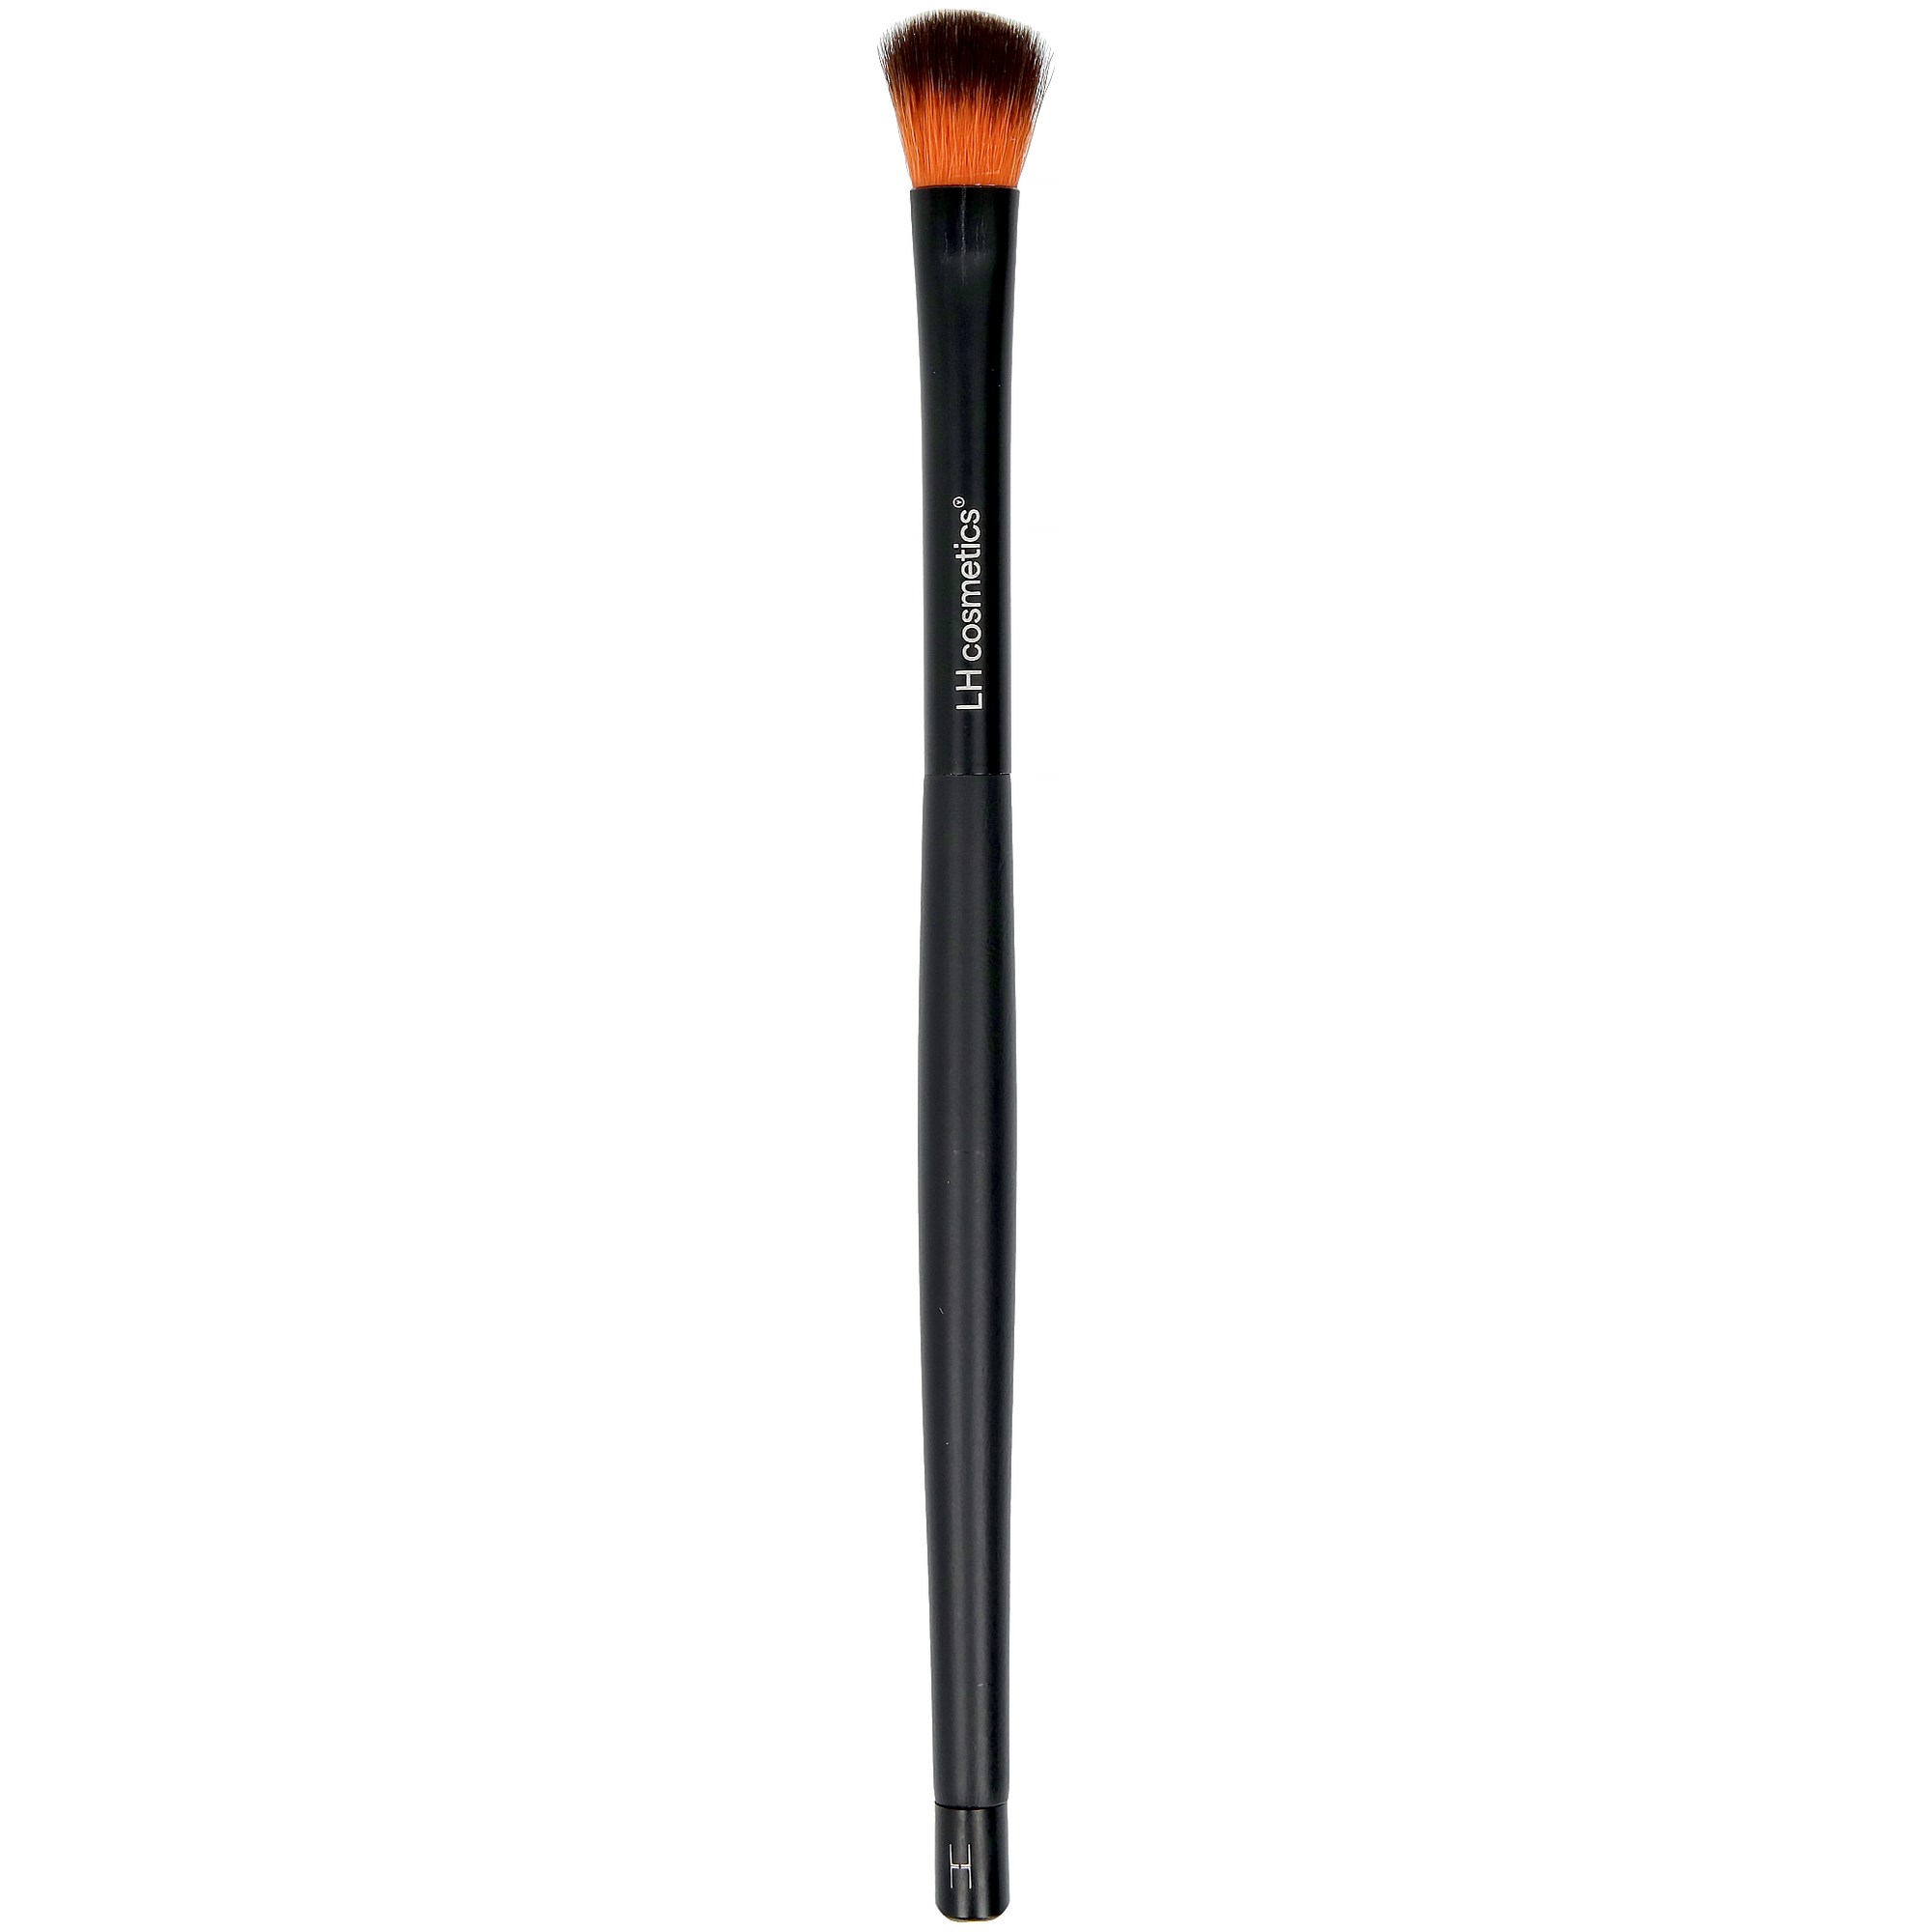 Bilde av Lh Cosmetics Brushes & Tools Blending Brush